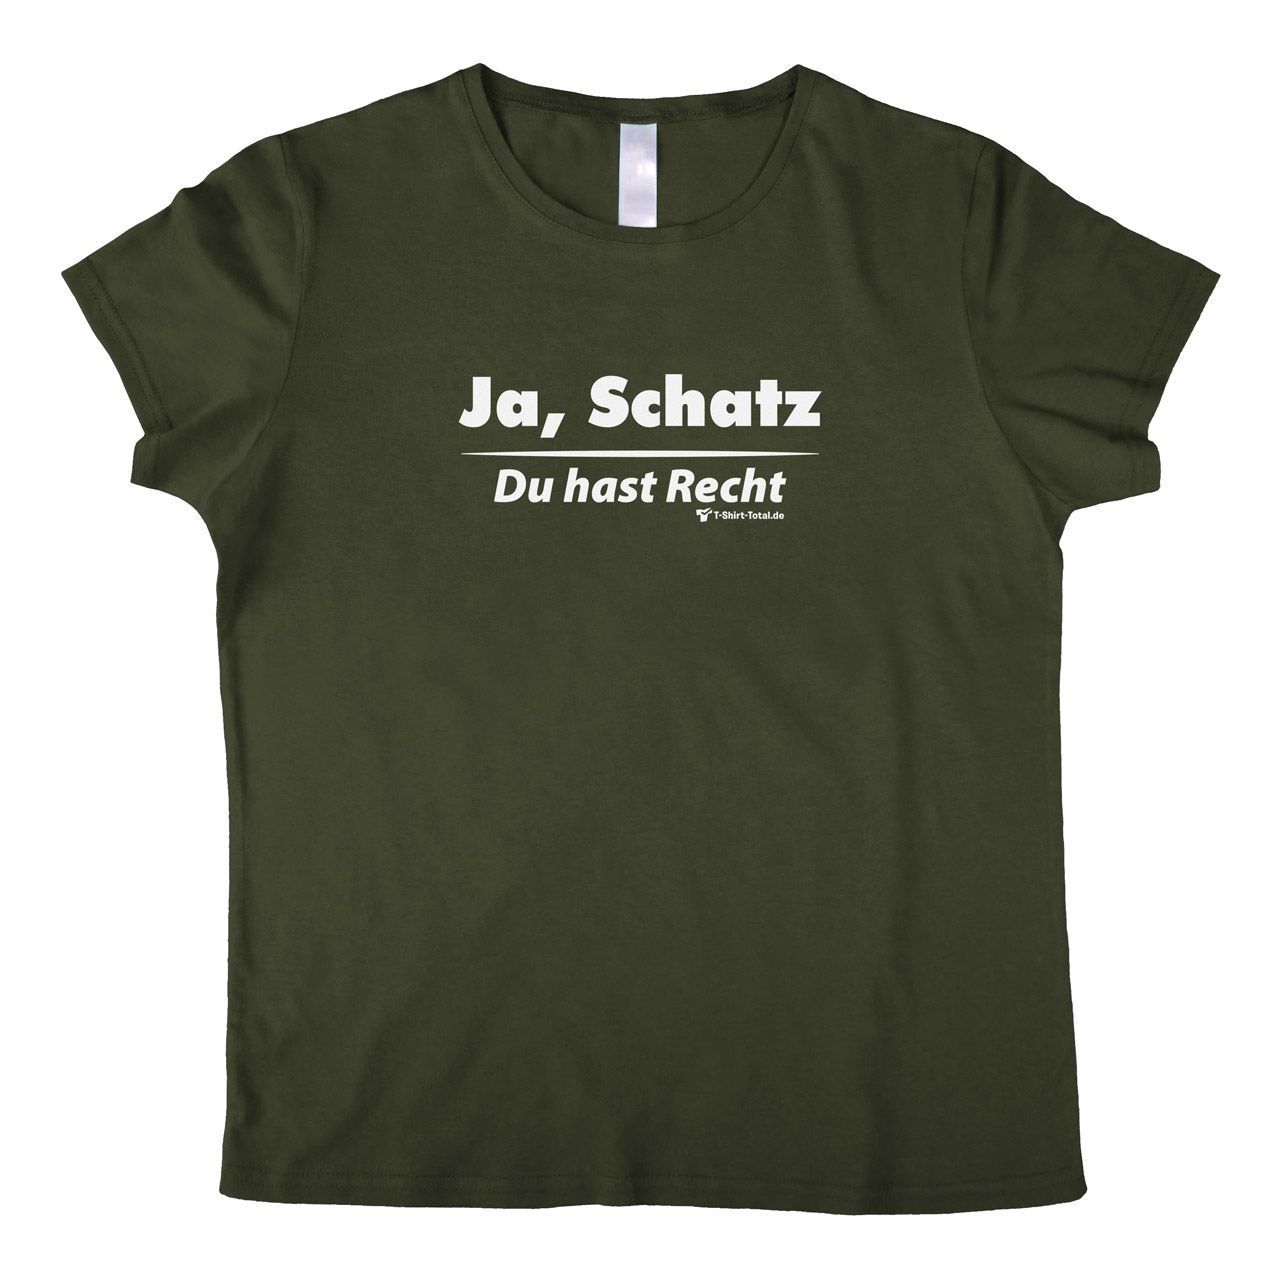 Ja Schatz Woman T-Shirt khaki Small